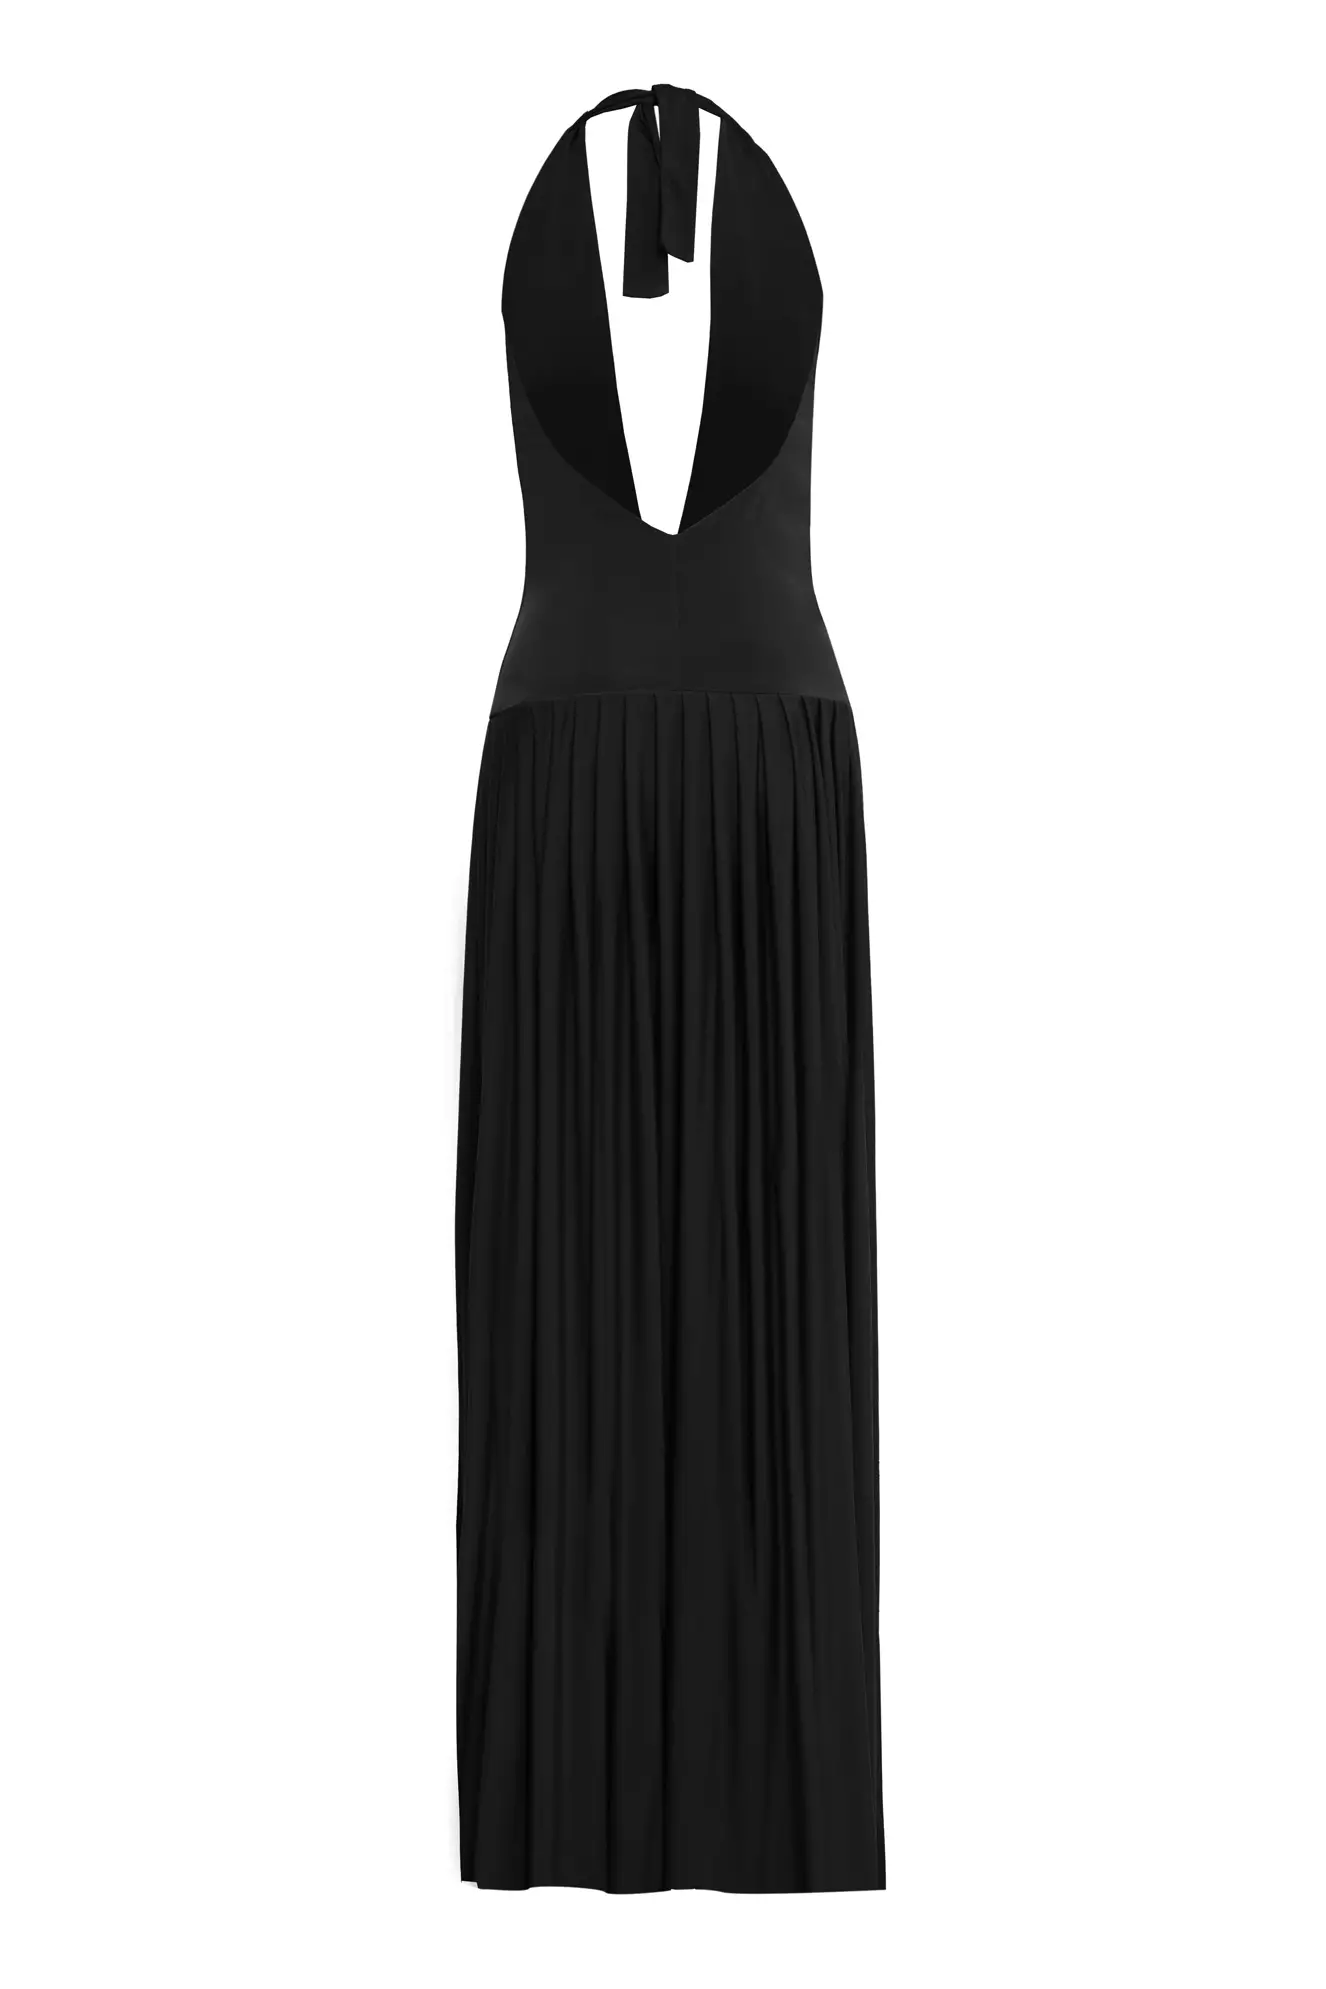 Black knitted sleeveless long dress